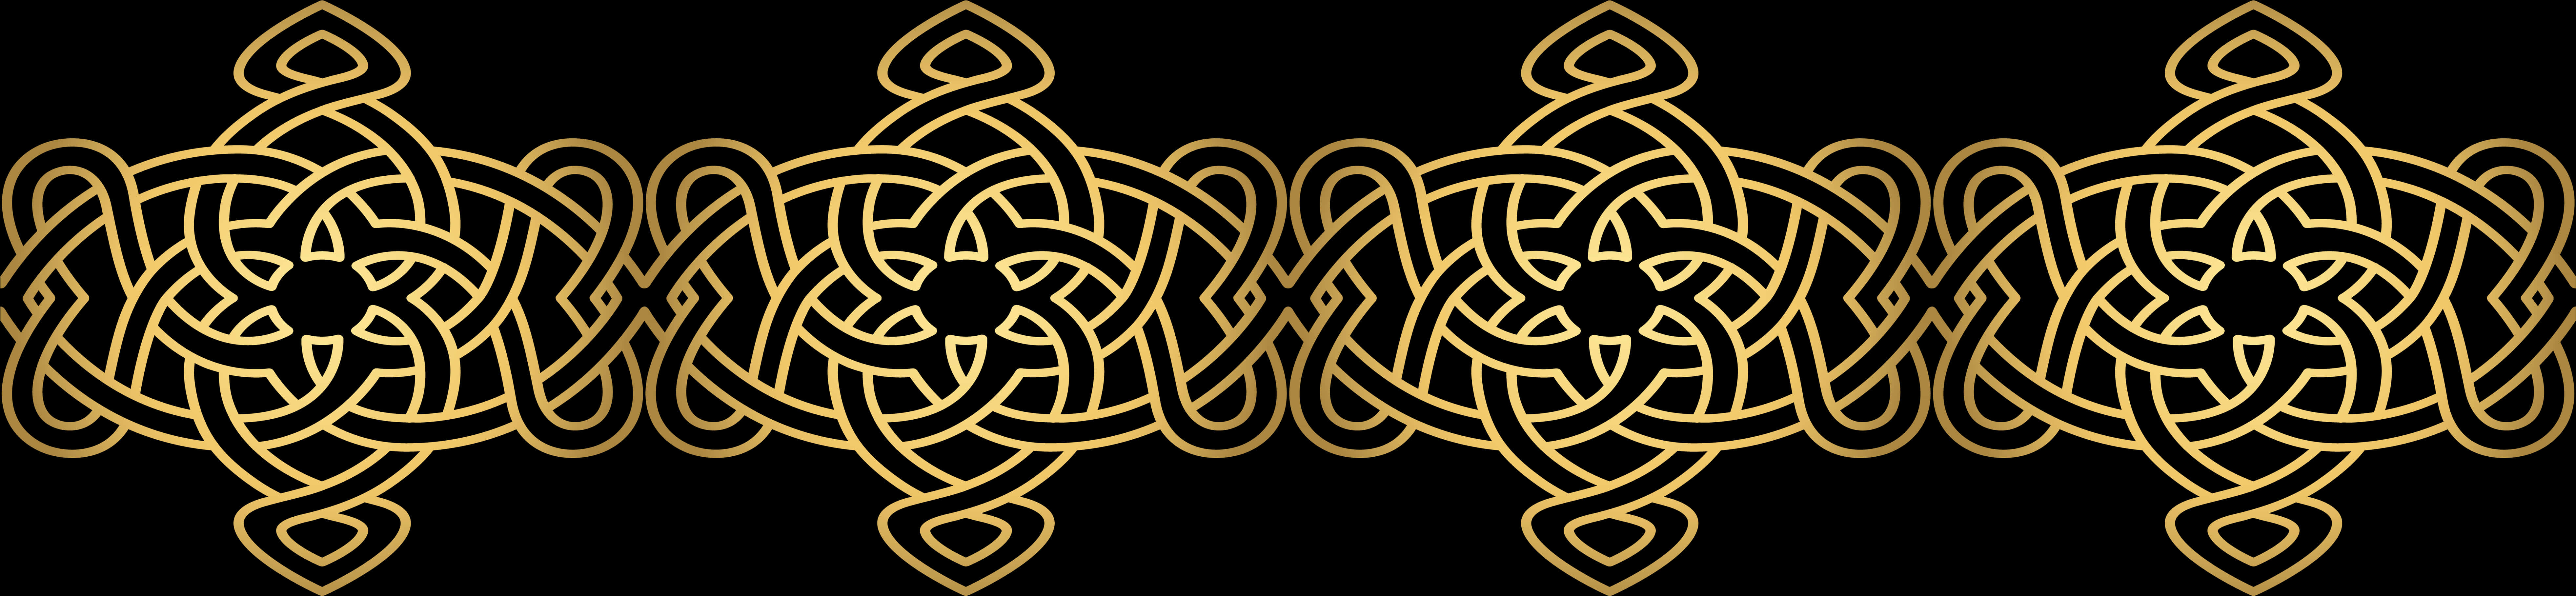 Golden Celtic Knot Border Pattern PNG